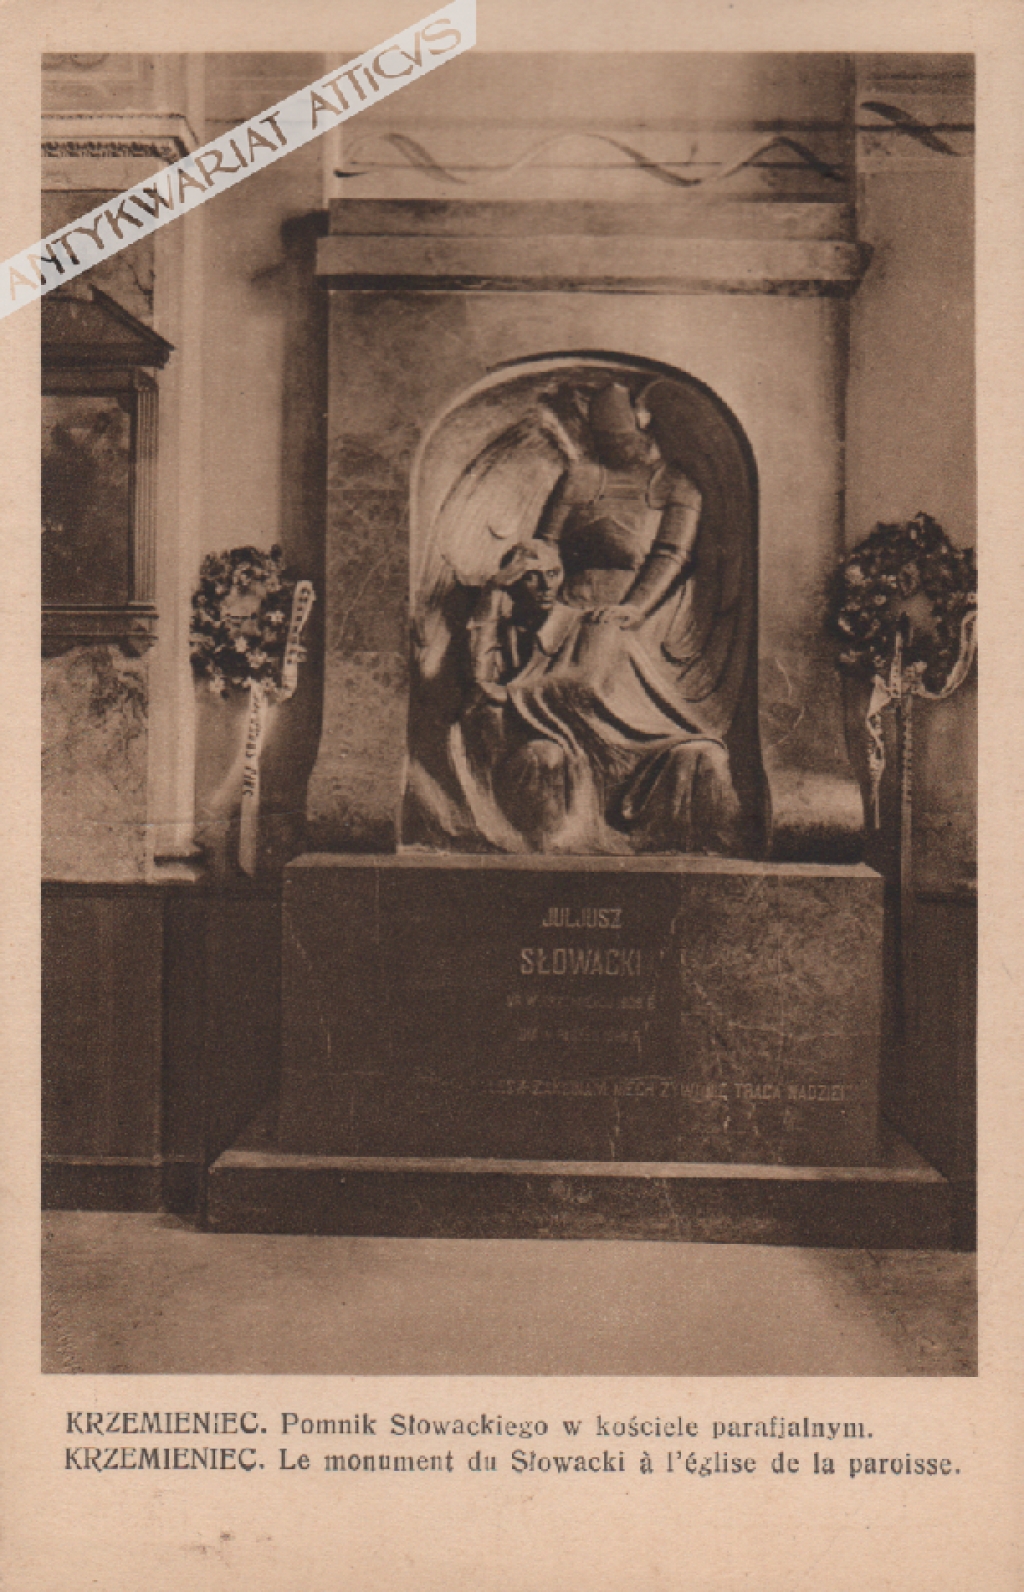 [pocztówka, lata 1920-te] Krzemieniec. Pomnik Słowackiego w kościele parafjalnym